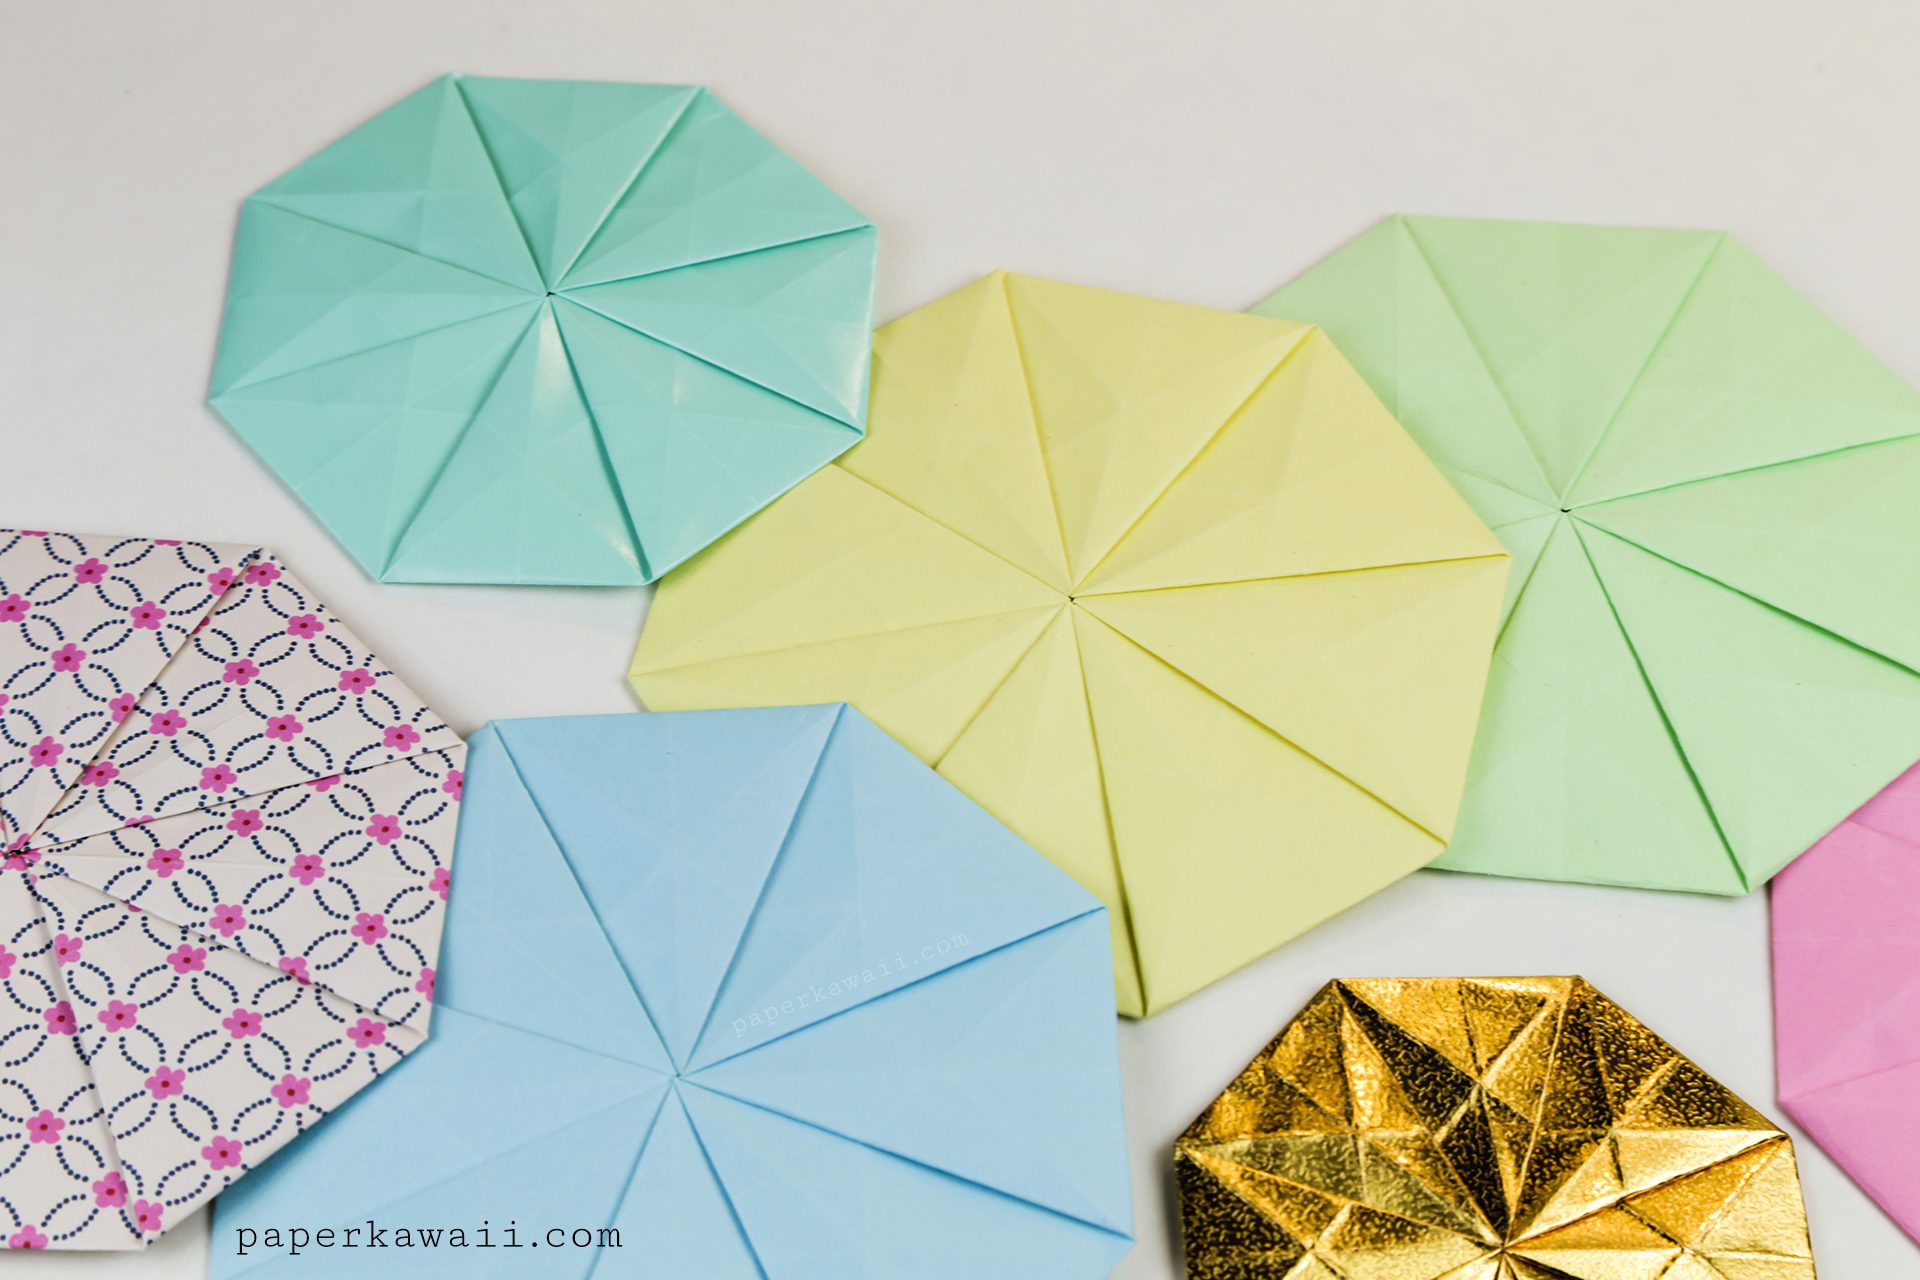 Colourful Origami Tato / Pouch / Coin / Coaster!